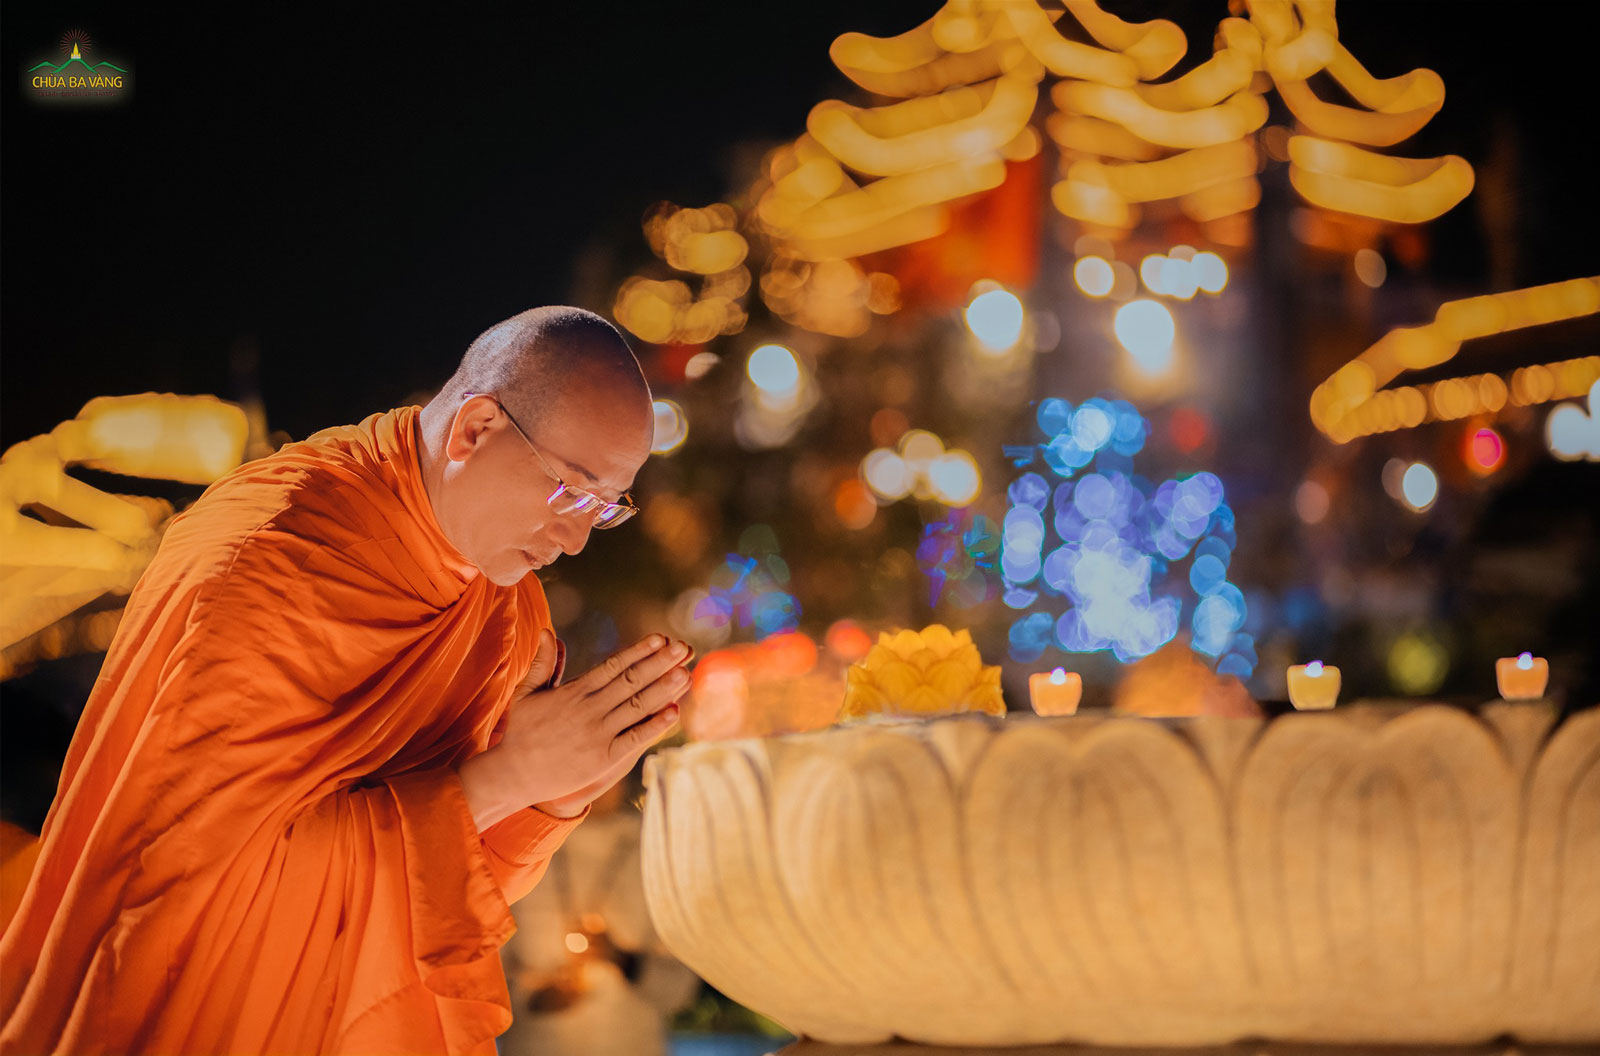 Kính lễ tôn tướng bàn chân Đức Phật, xin Ngài che chở, dìu dắt cho chúng sinh đi trên con đường sáng trí tuệ và tránh xa mọi khổ đau, chướng nạn của thế gian…